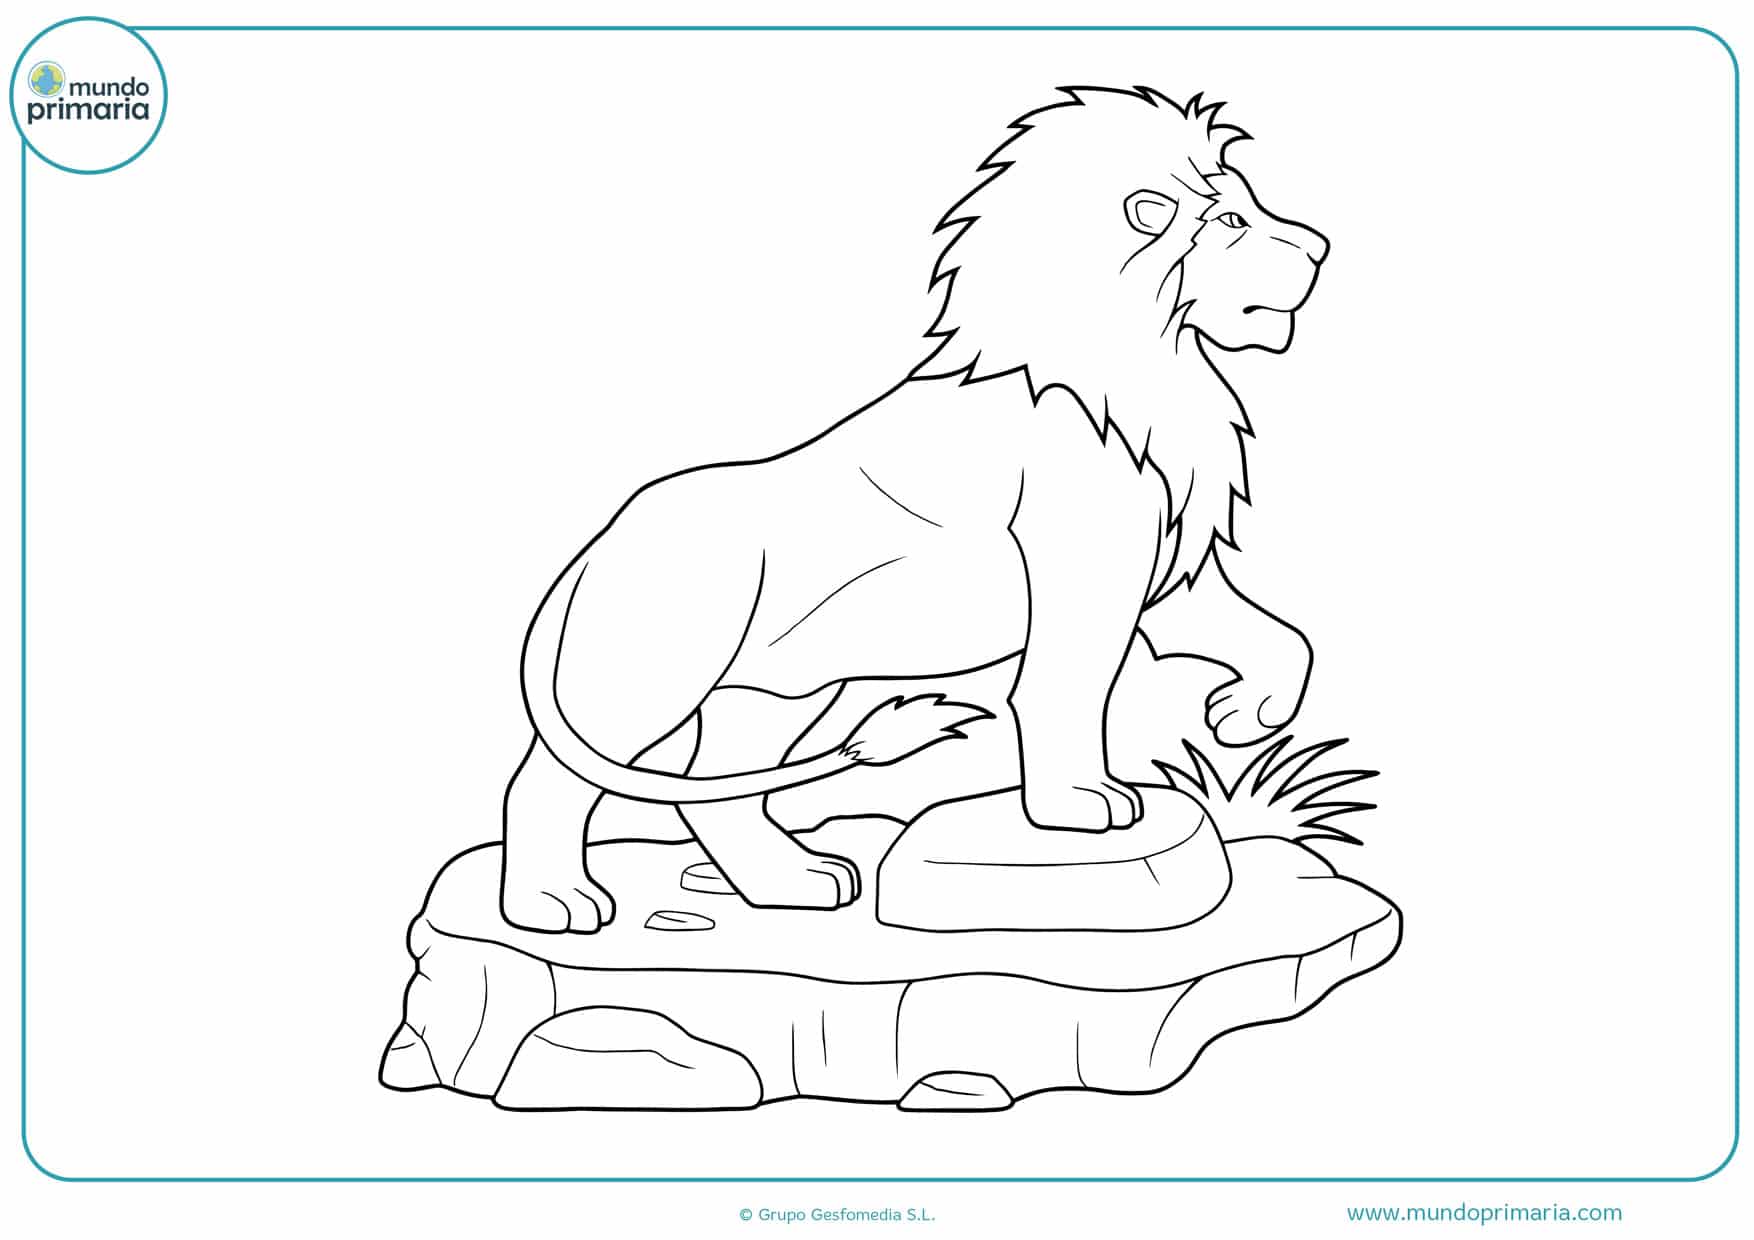 Dibujos de leones para Colorear a Lápiz o como quieras - Mundo Primaria